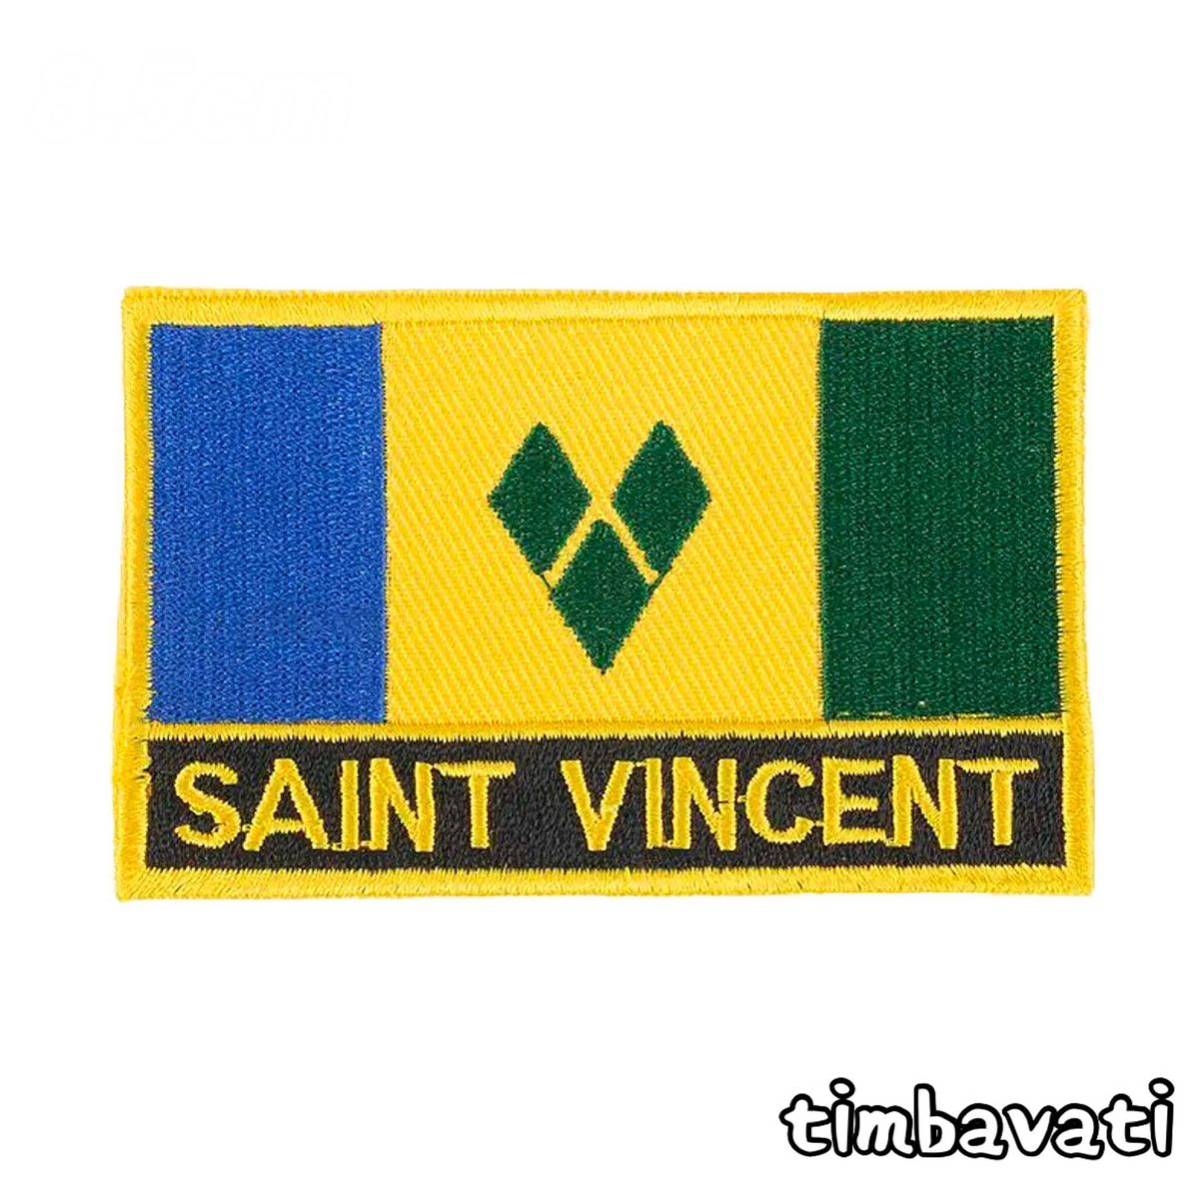 Новый [St. Vinnecent] Вышивка Ilon Patch * World Flag Series * [Условная бесплатная доставка]